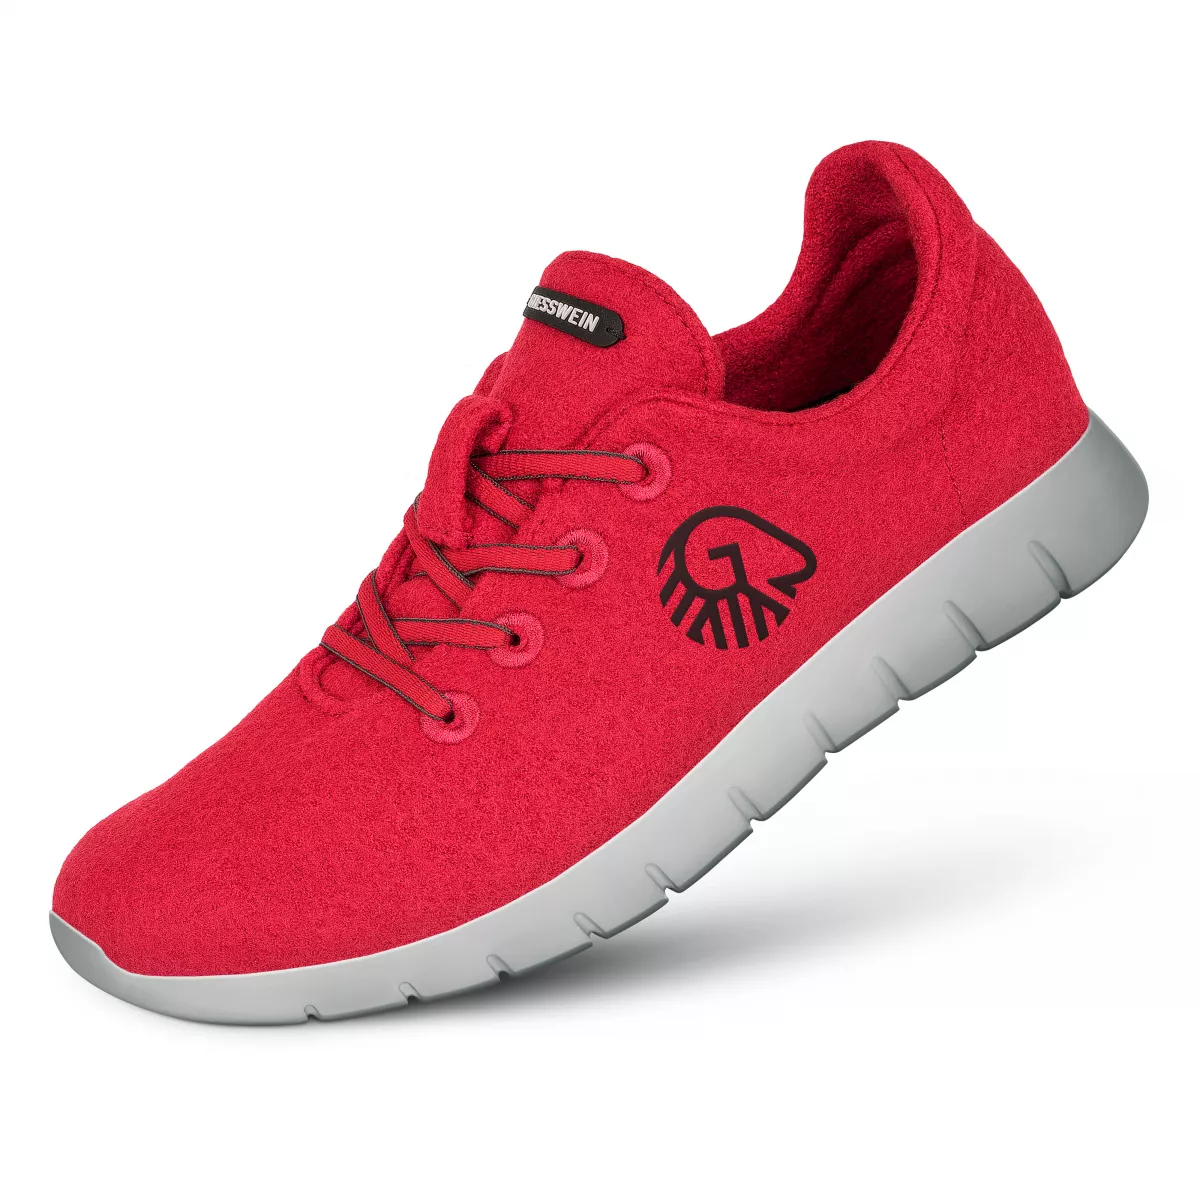 Pantofi barbati Merino Runners rosu 40